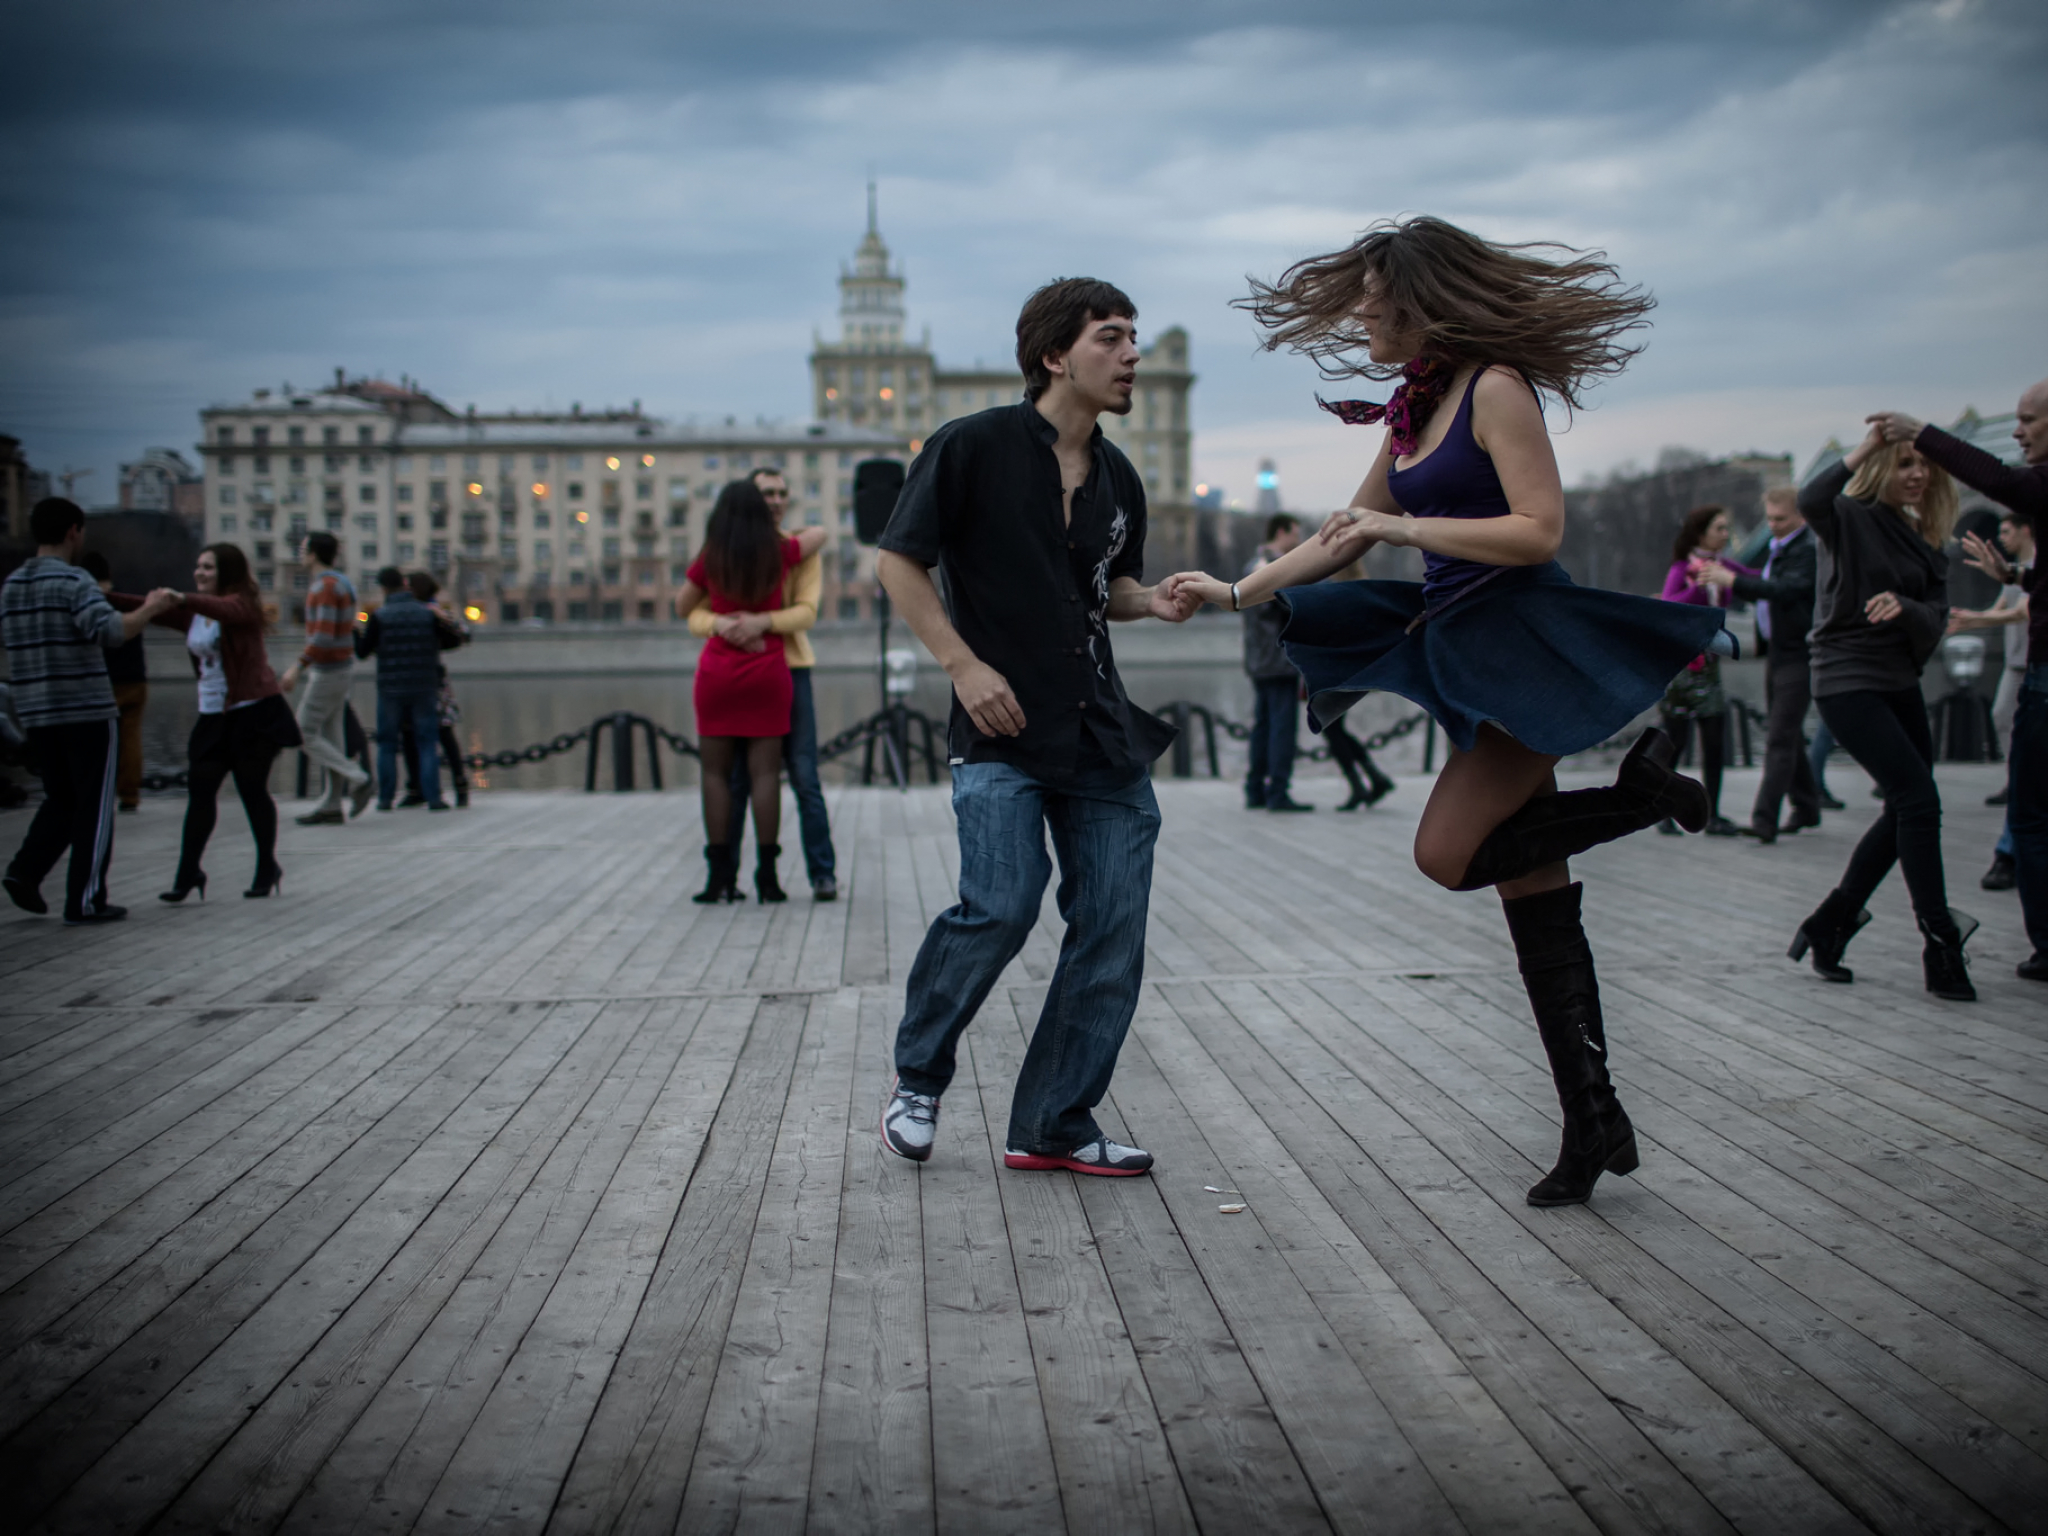 Танцевать плавно. Люди танцуют. Танцы на улице. Парень и девушка танцуют. Танцующие люди на улице.